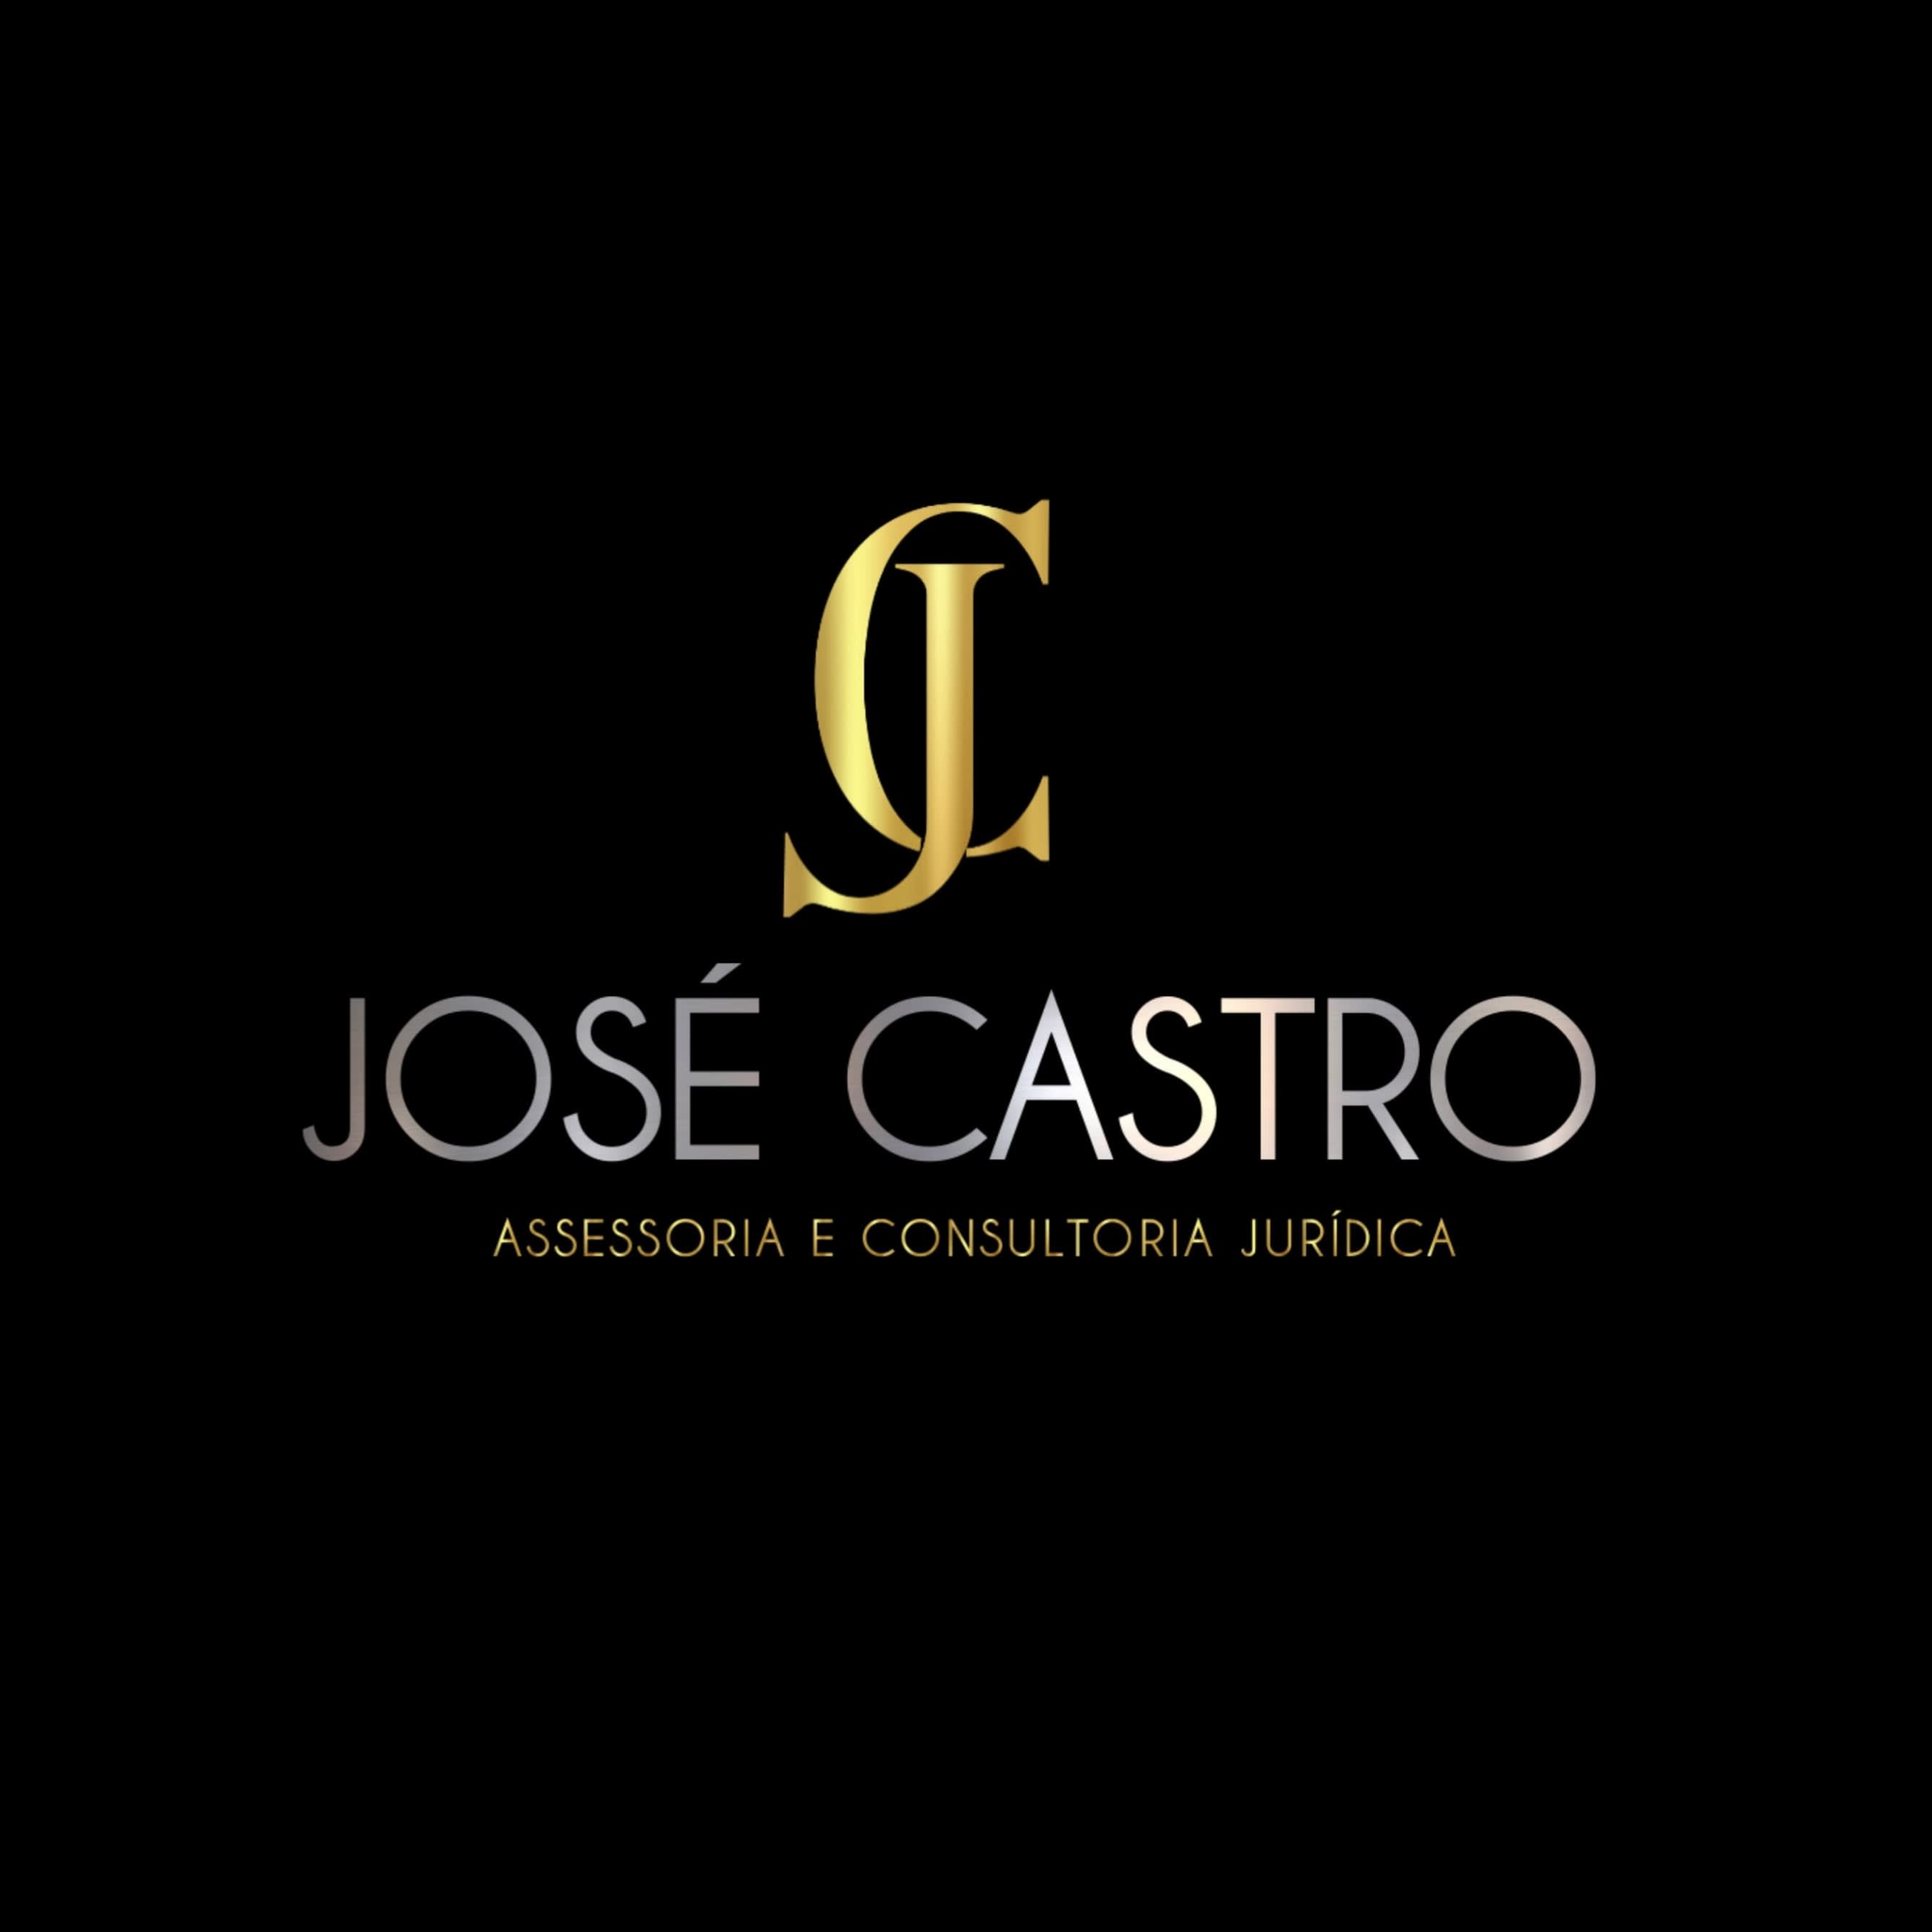 Jose Castro Assessoria e Consultoria Jurídica